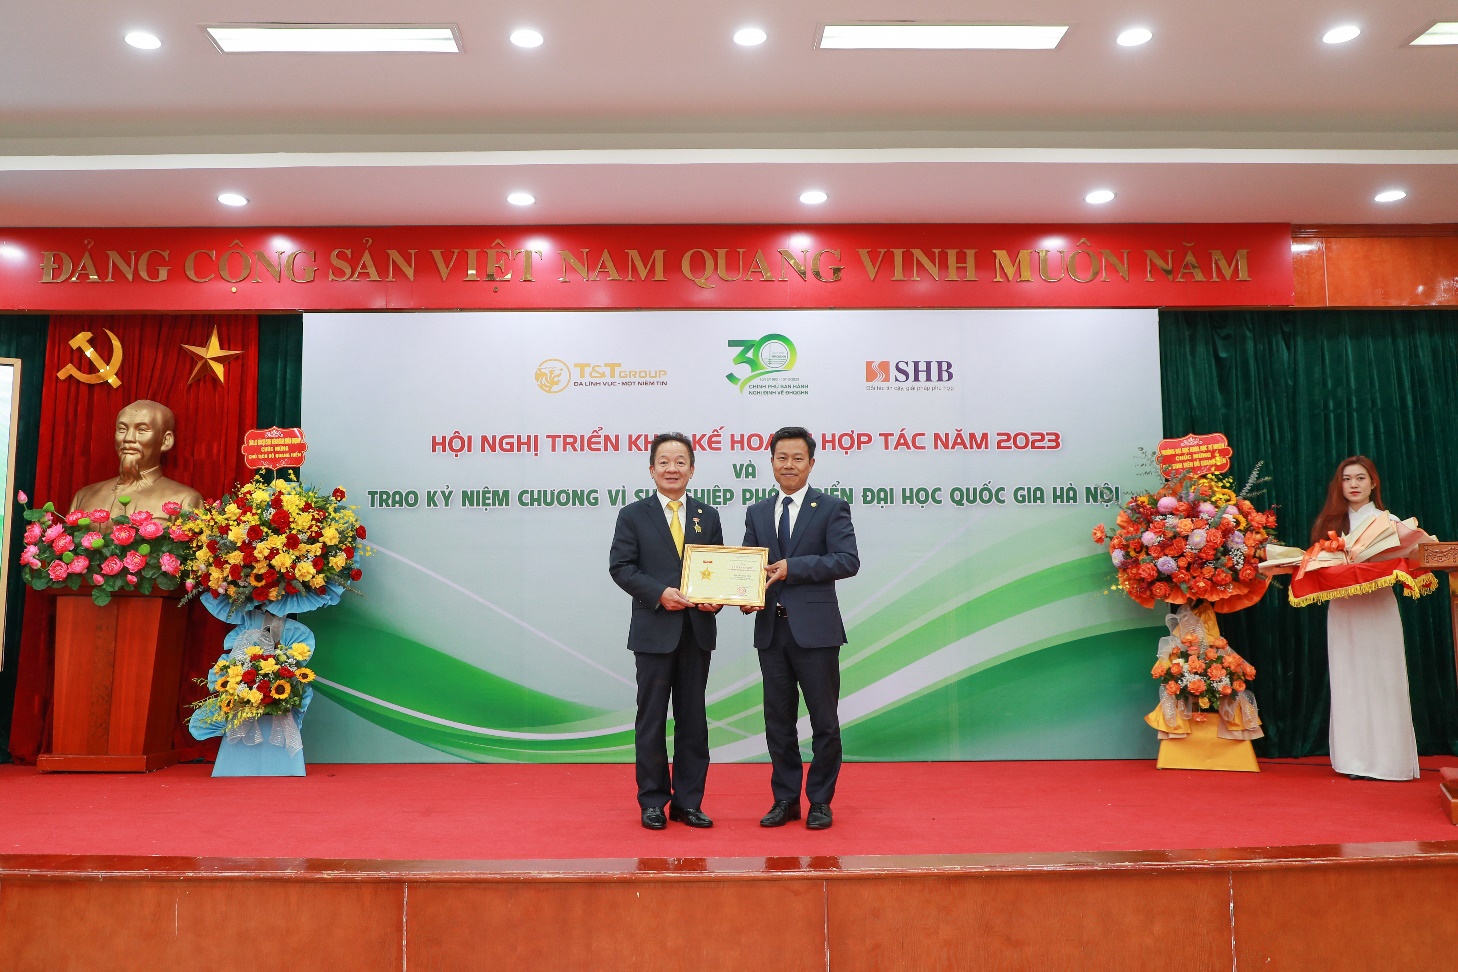 Doanh nhân Đỗ Quang  Hiển nhận kỷ niệm chương vì sự phát triển Đại học Quốc gia Hà Nội  - Ảnh 1.